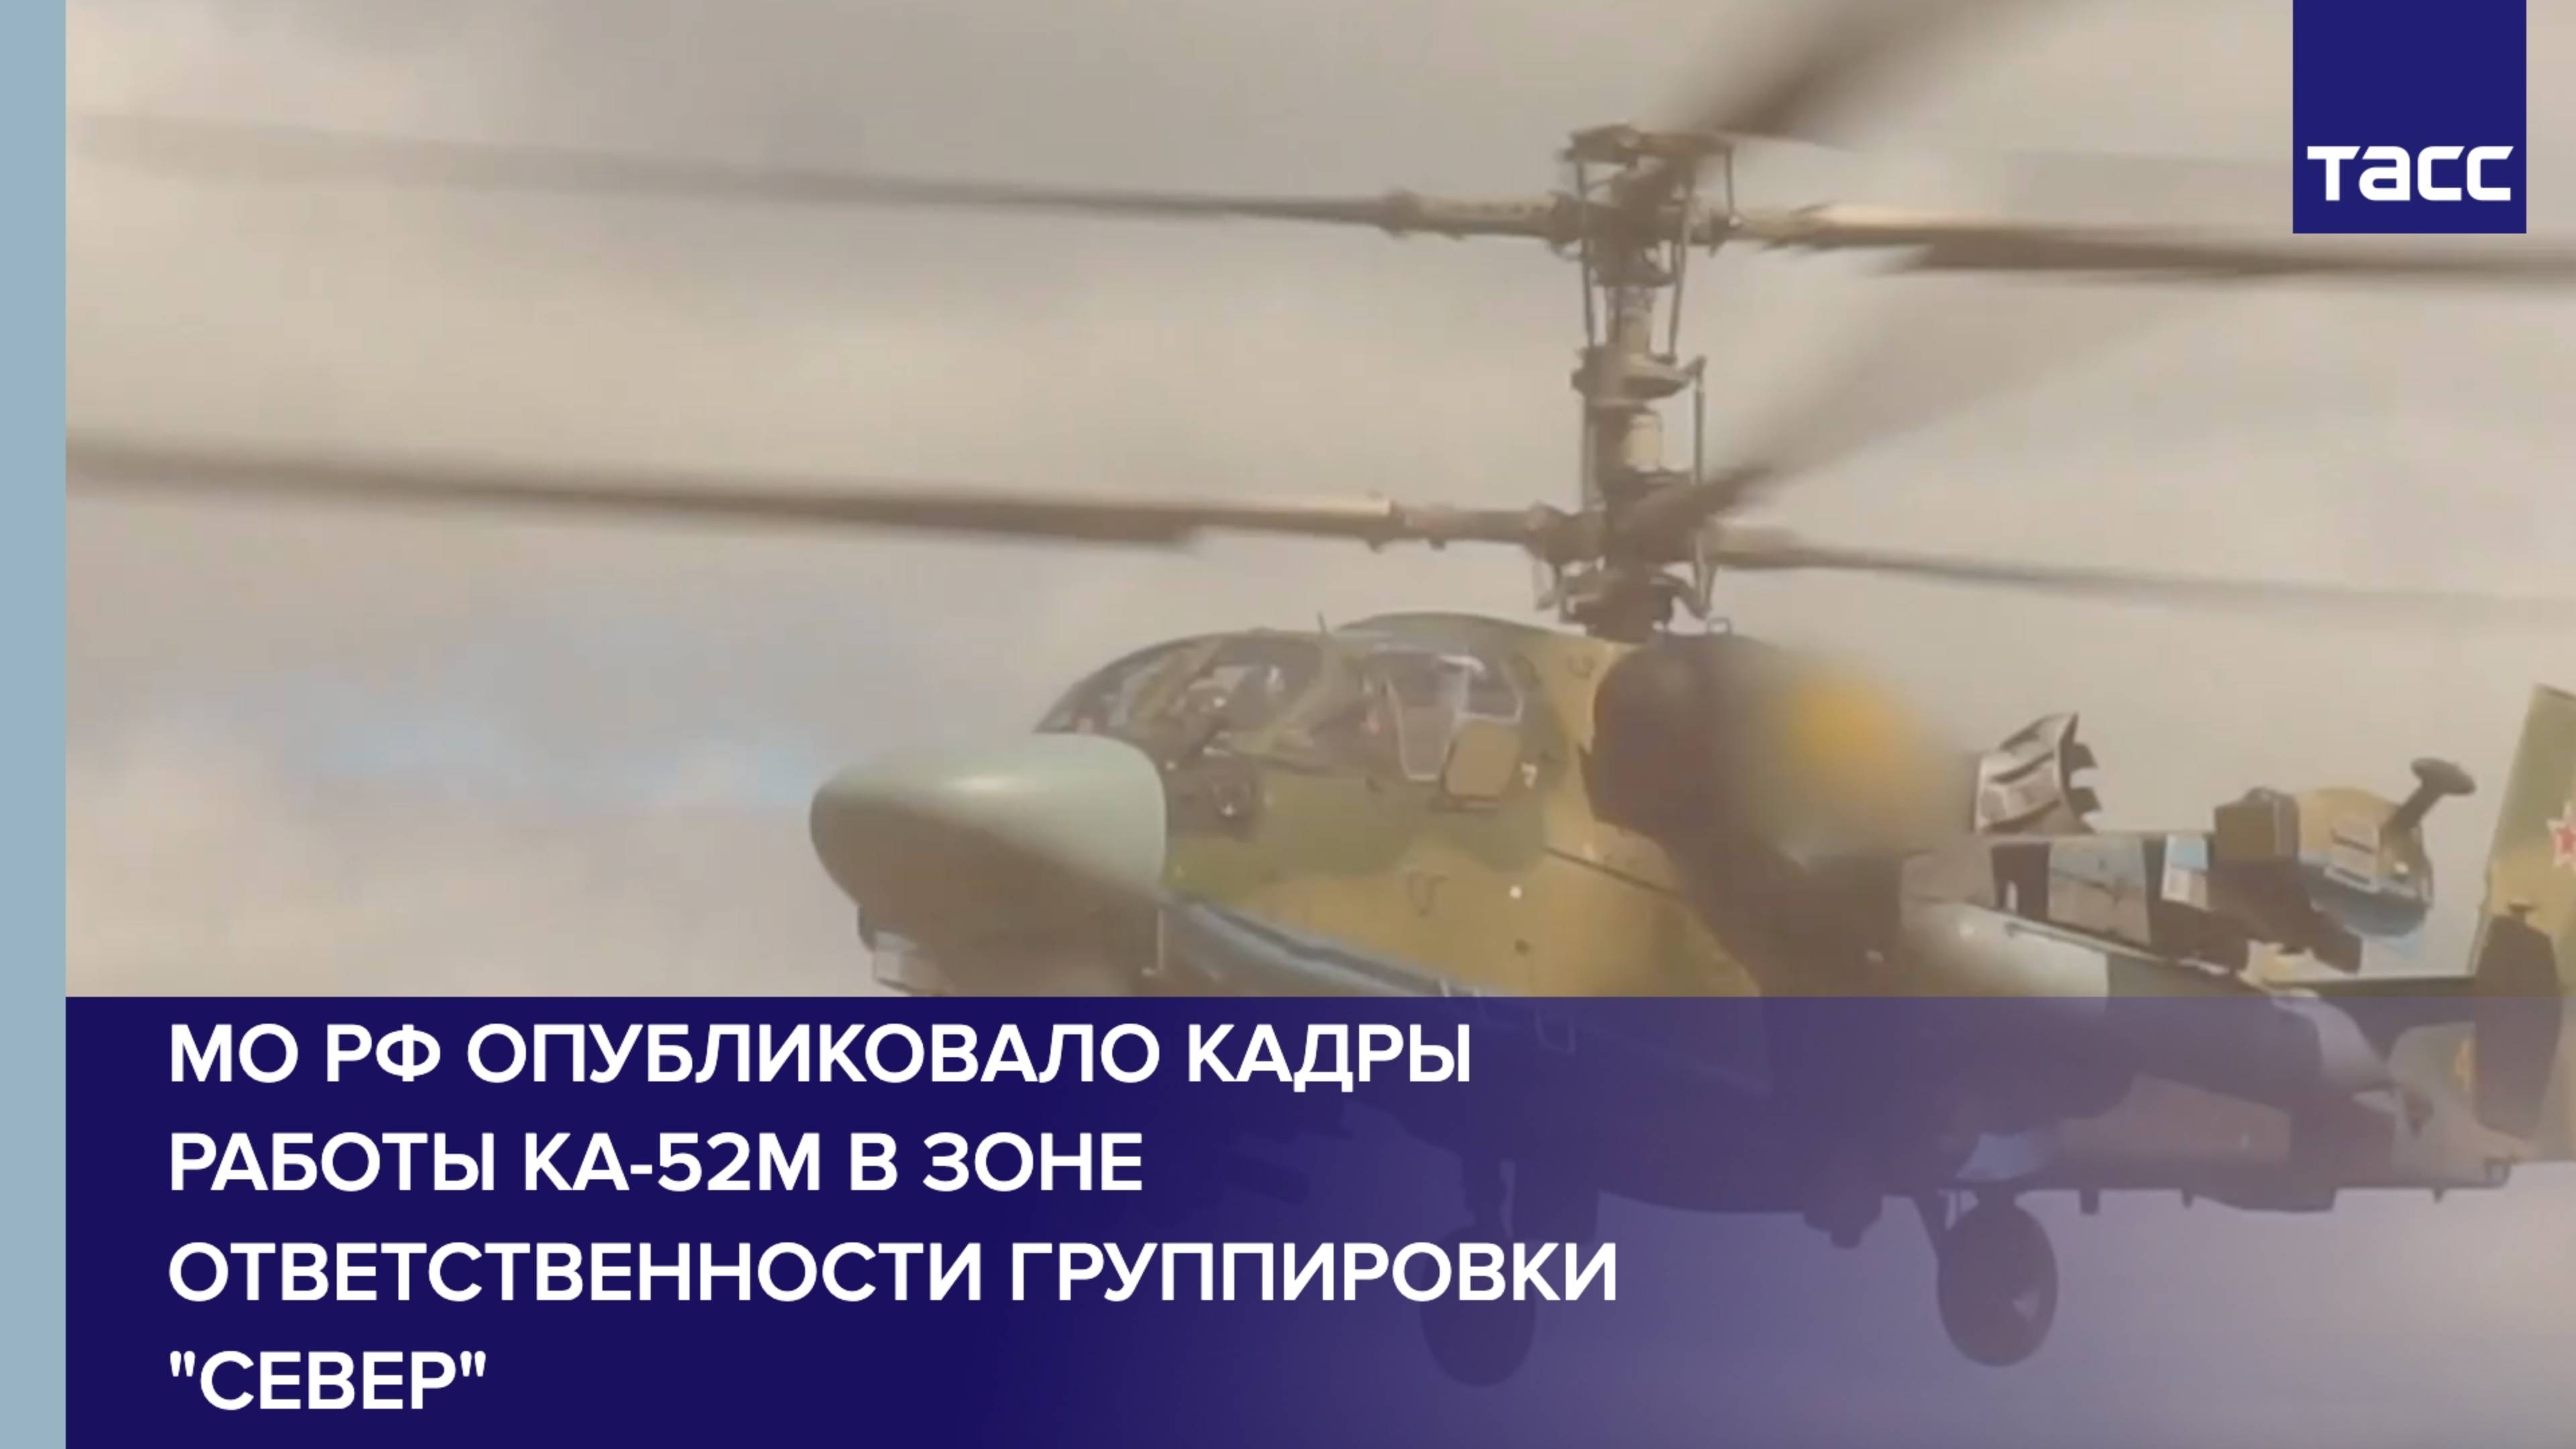 МО РФ опубликовало кадры работы Ка-52М в зоне ответственности группировки "Север"